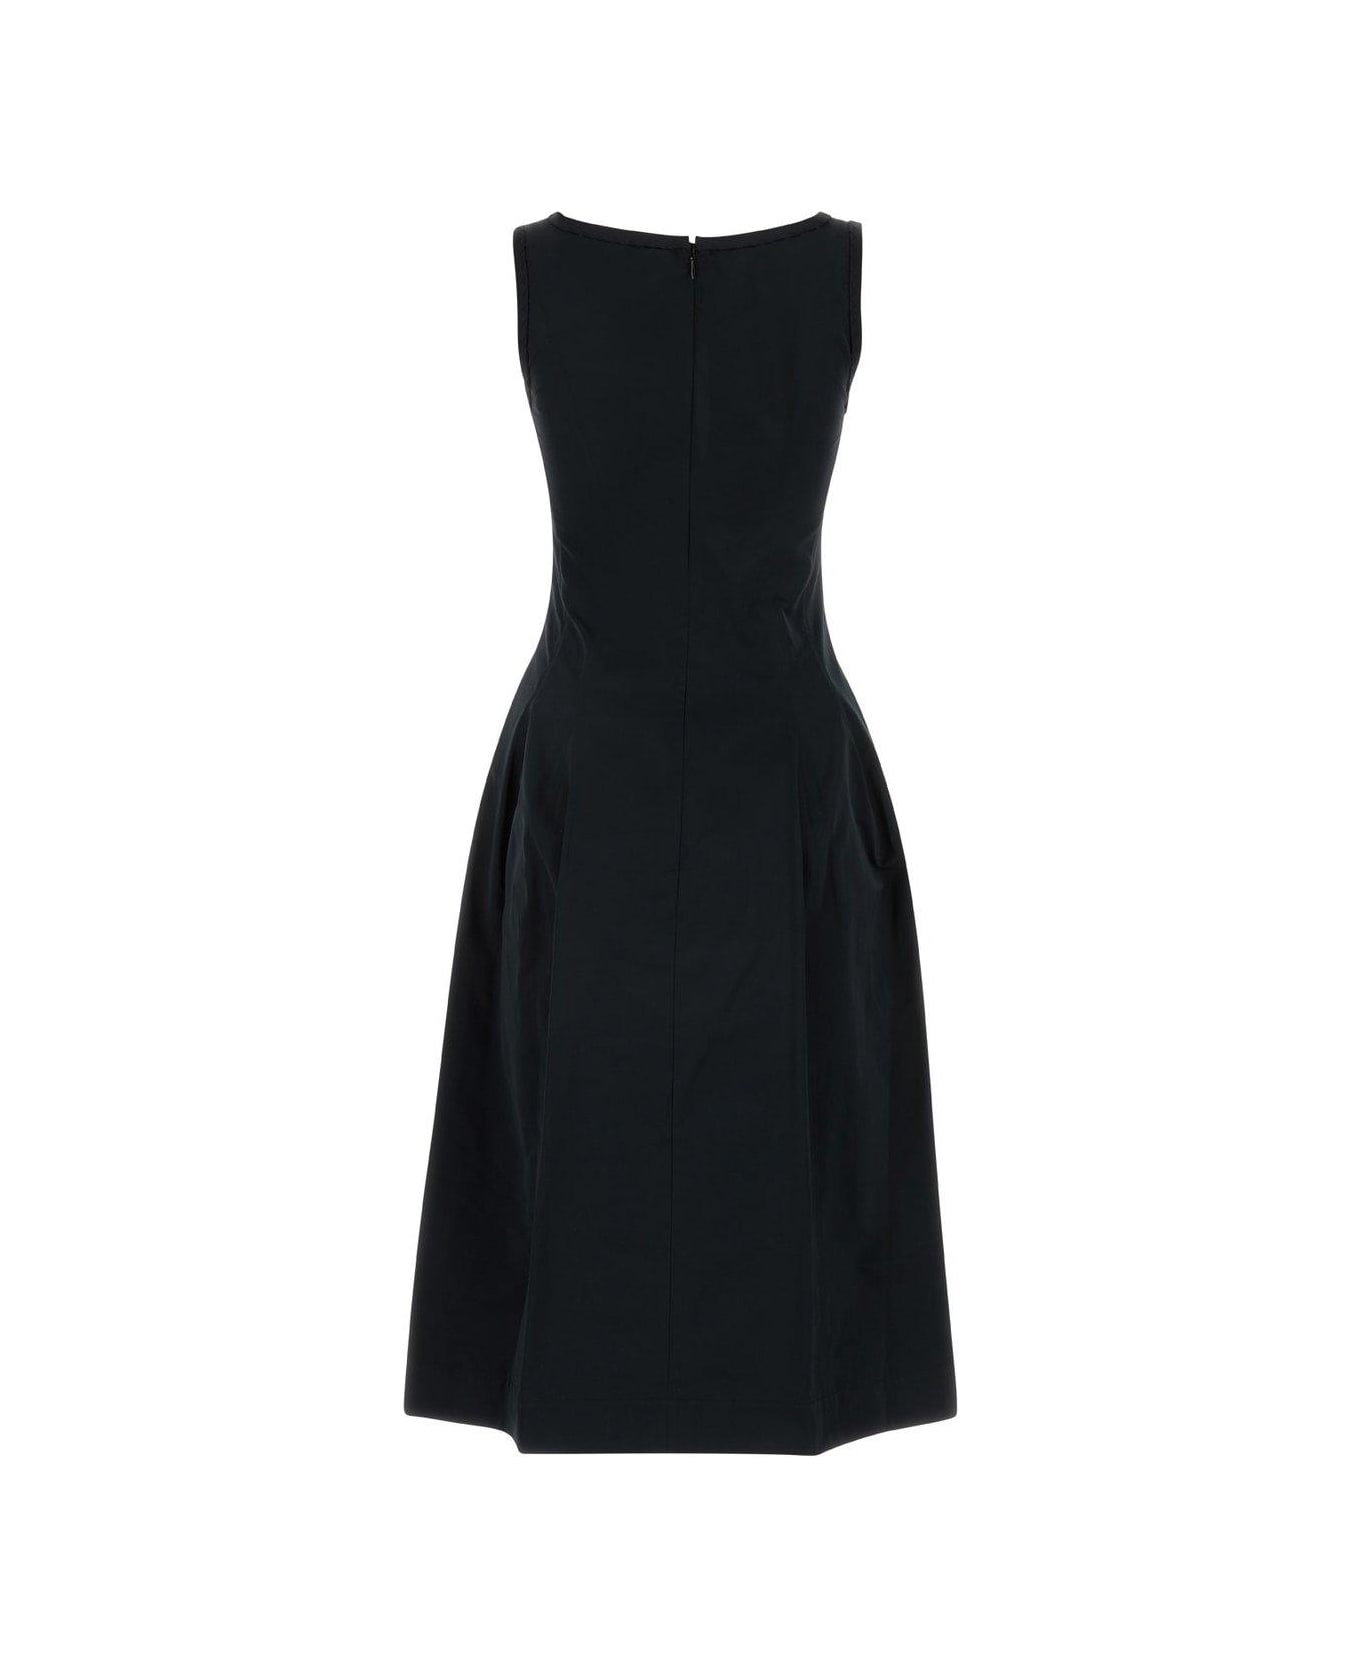 Marni Sleeveless Pleated Dress - Black